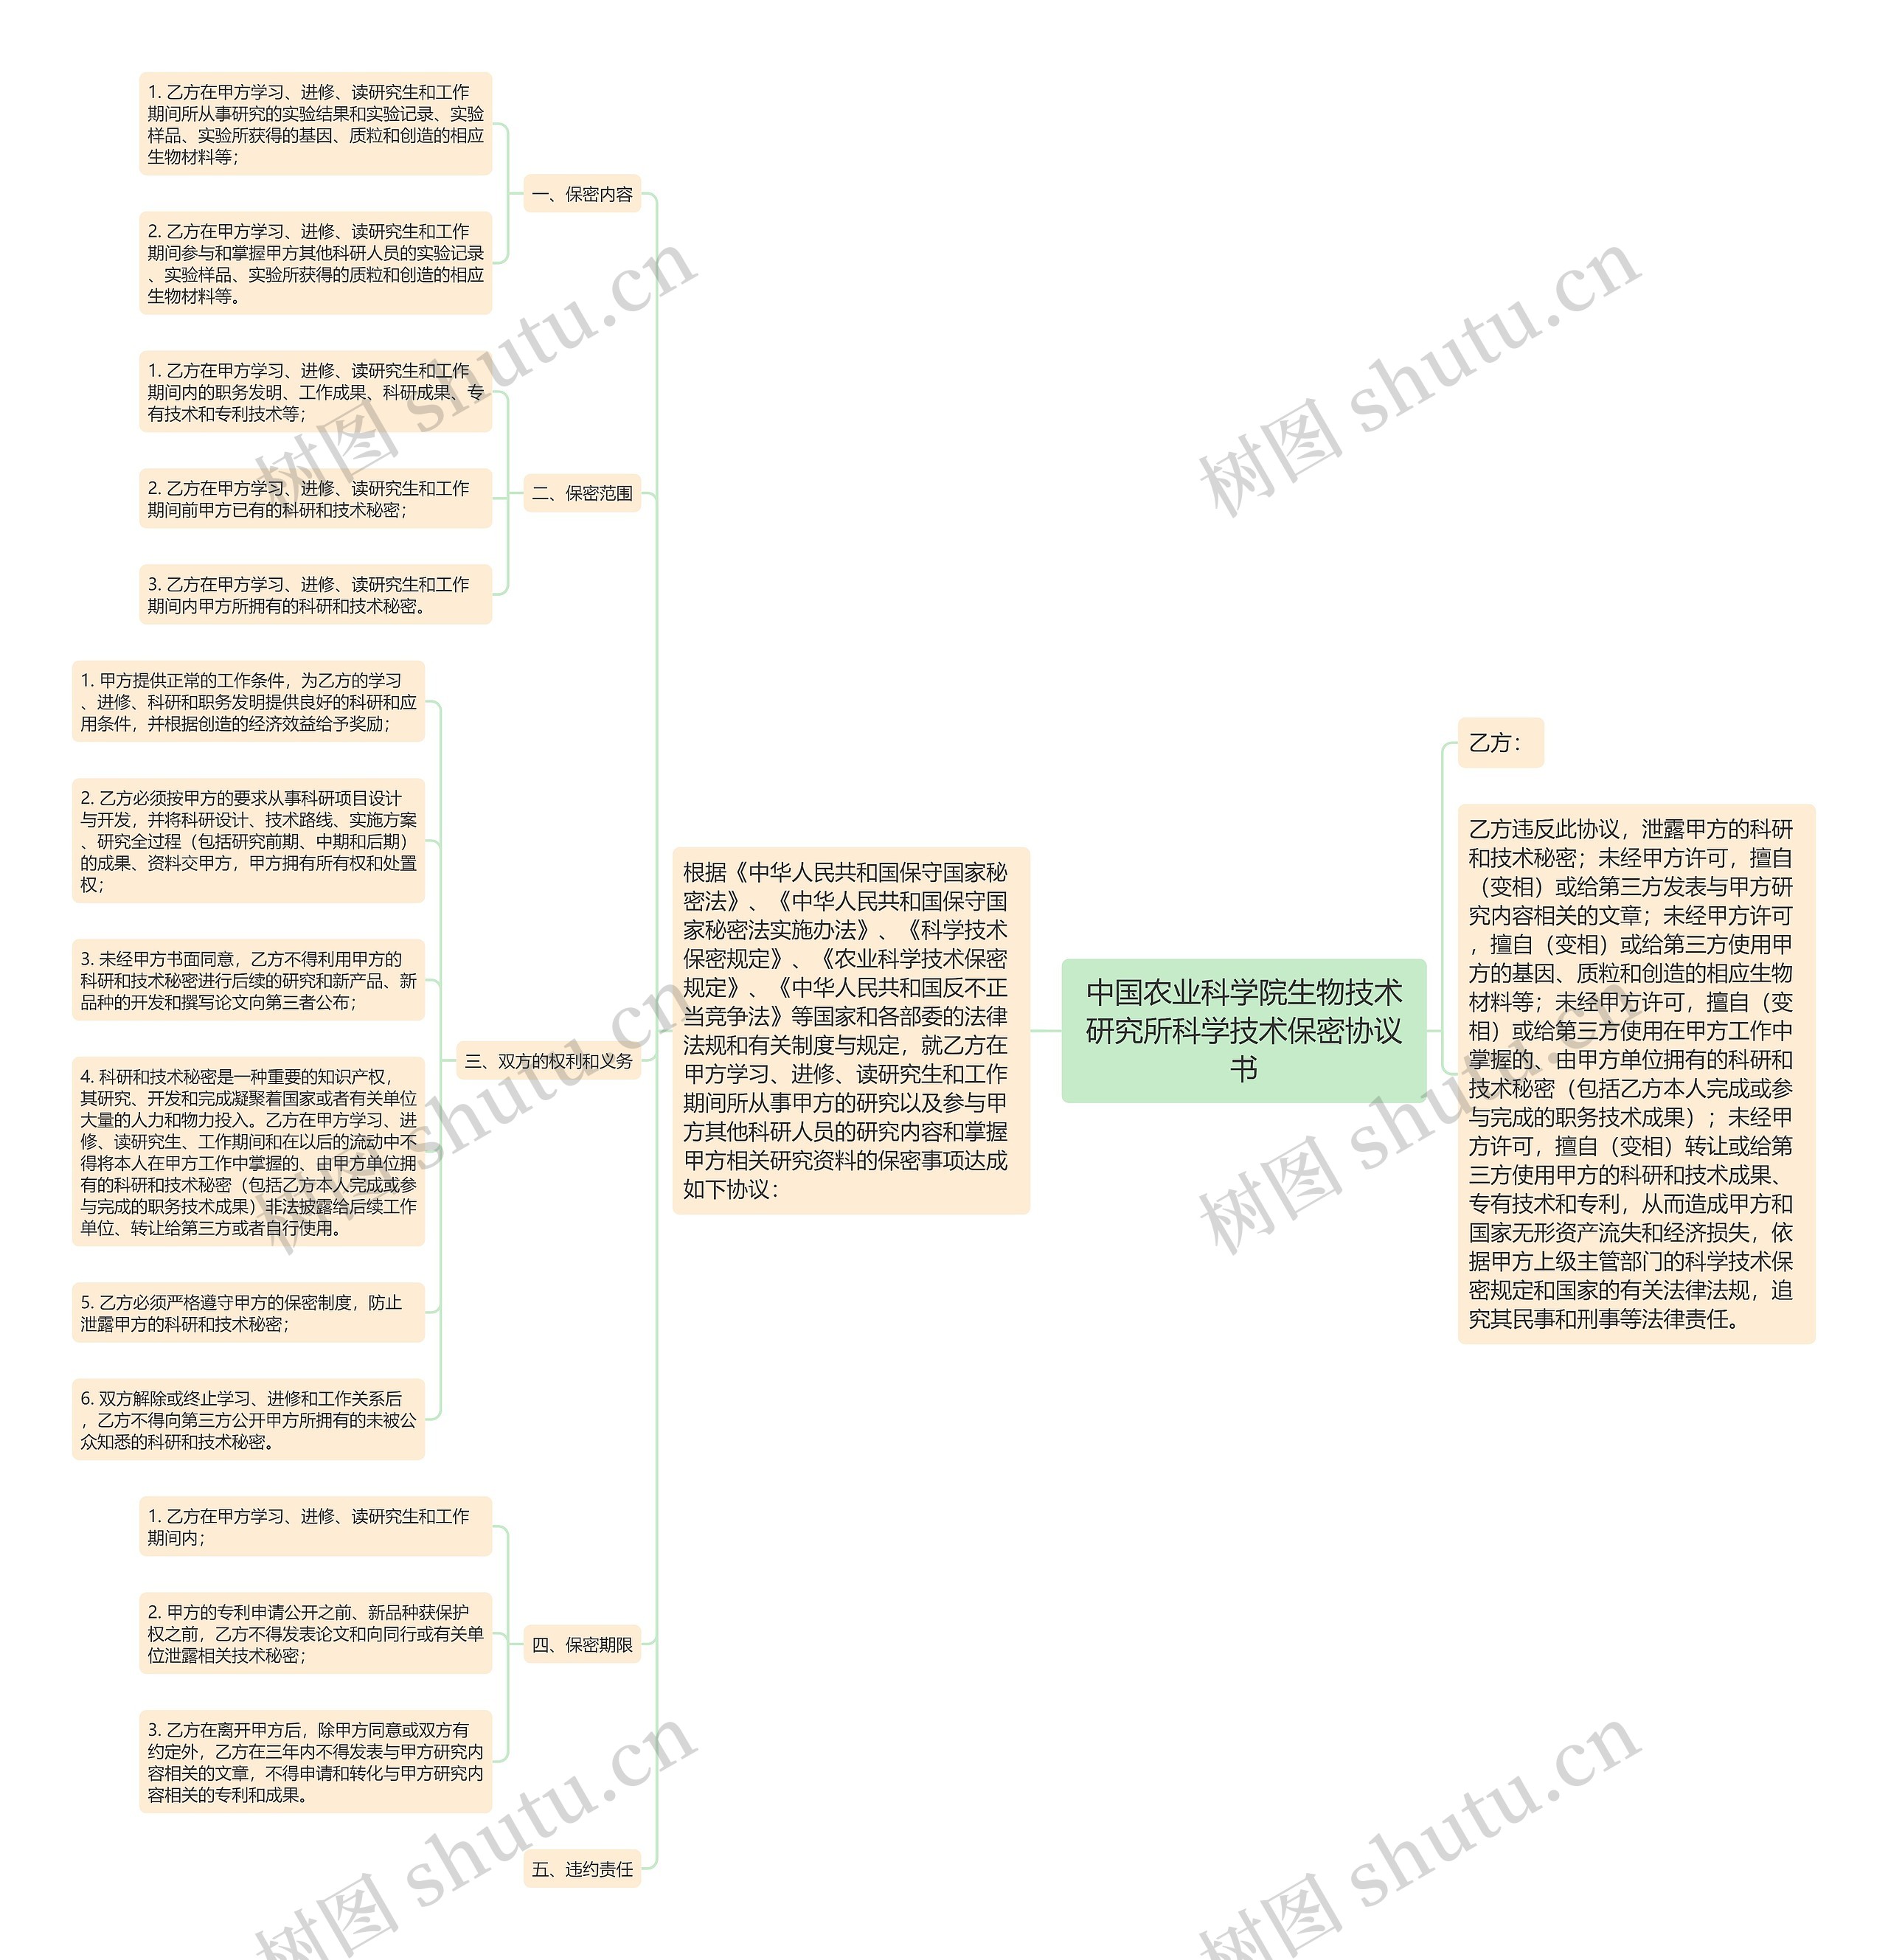 中国农业科学院生物技术研究所科学技术保密协议书思维导图